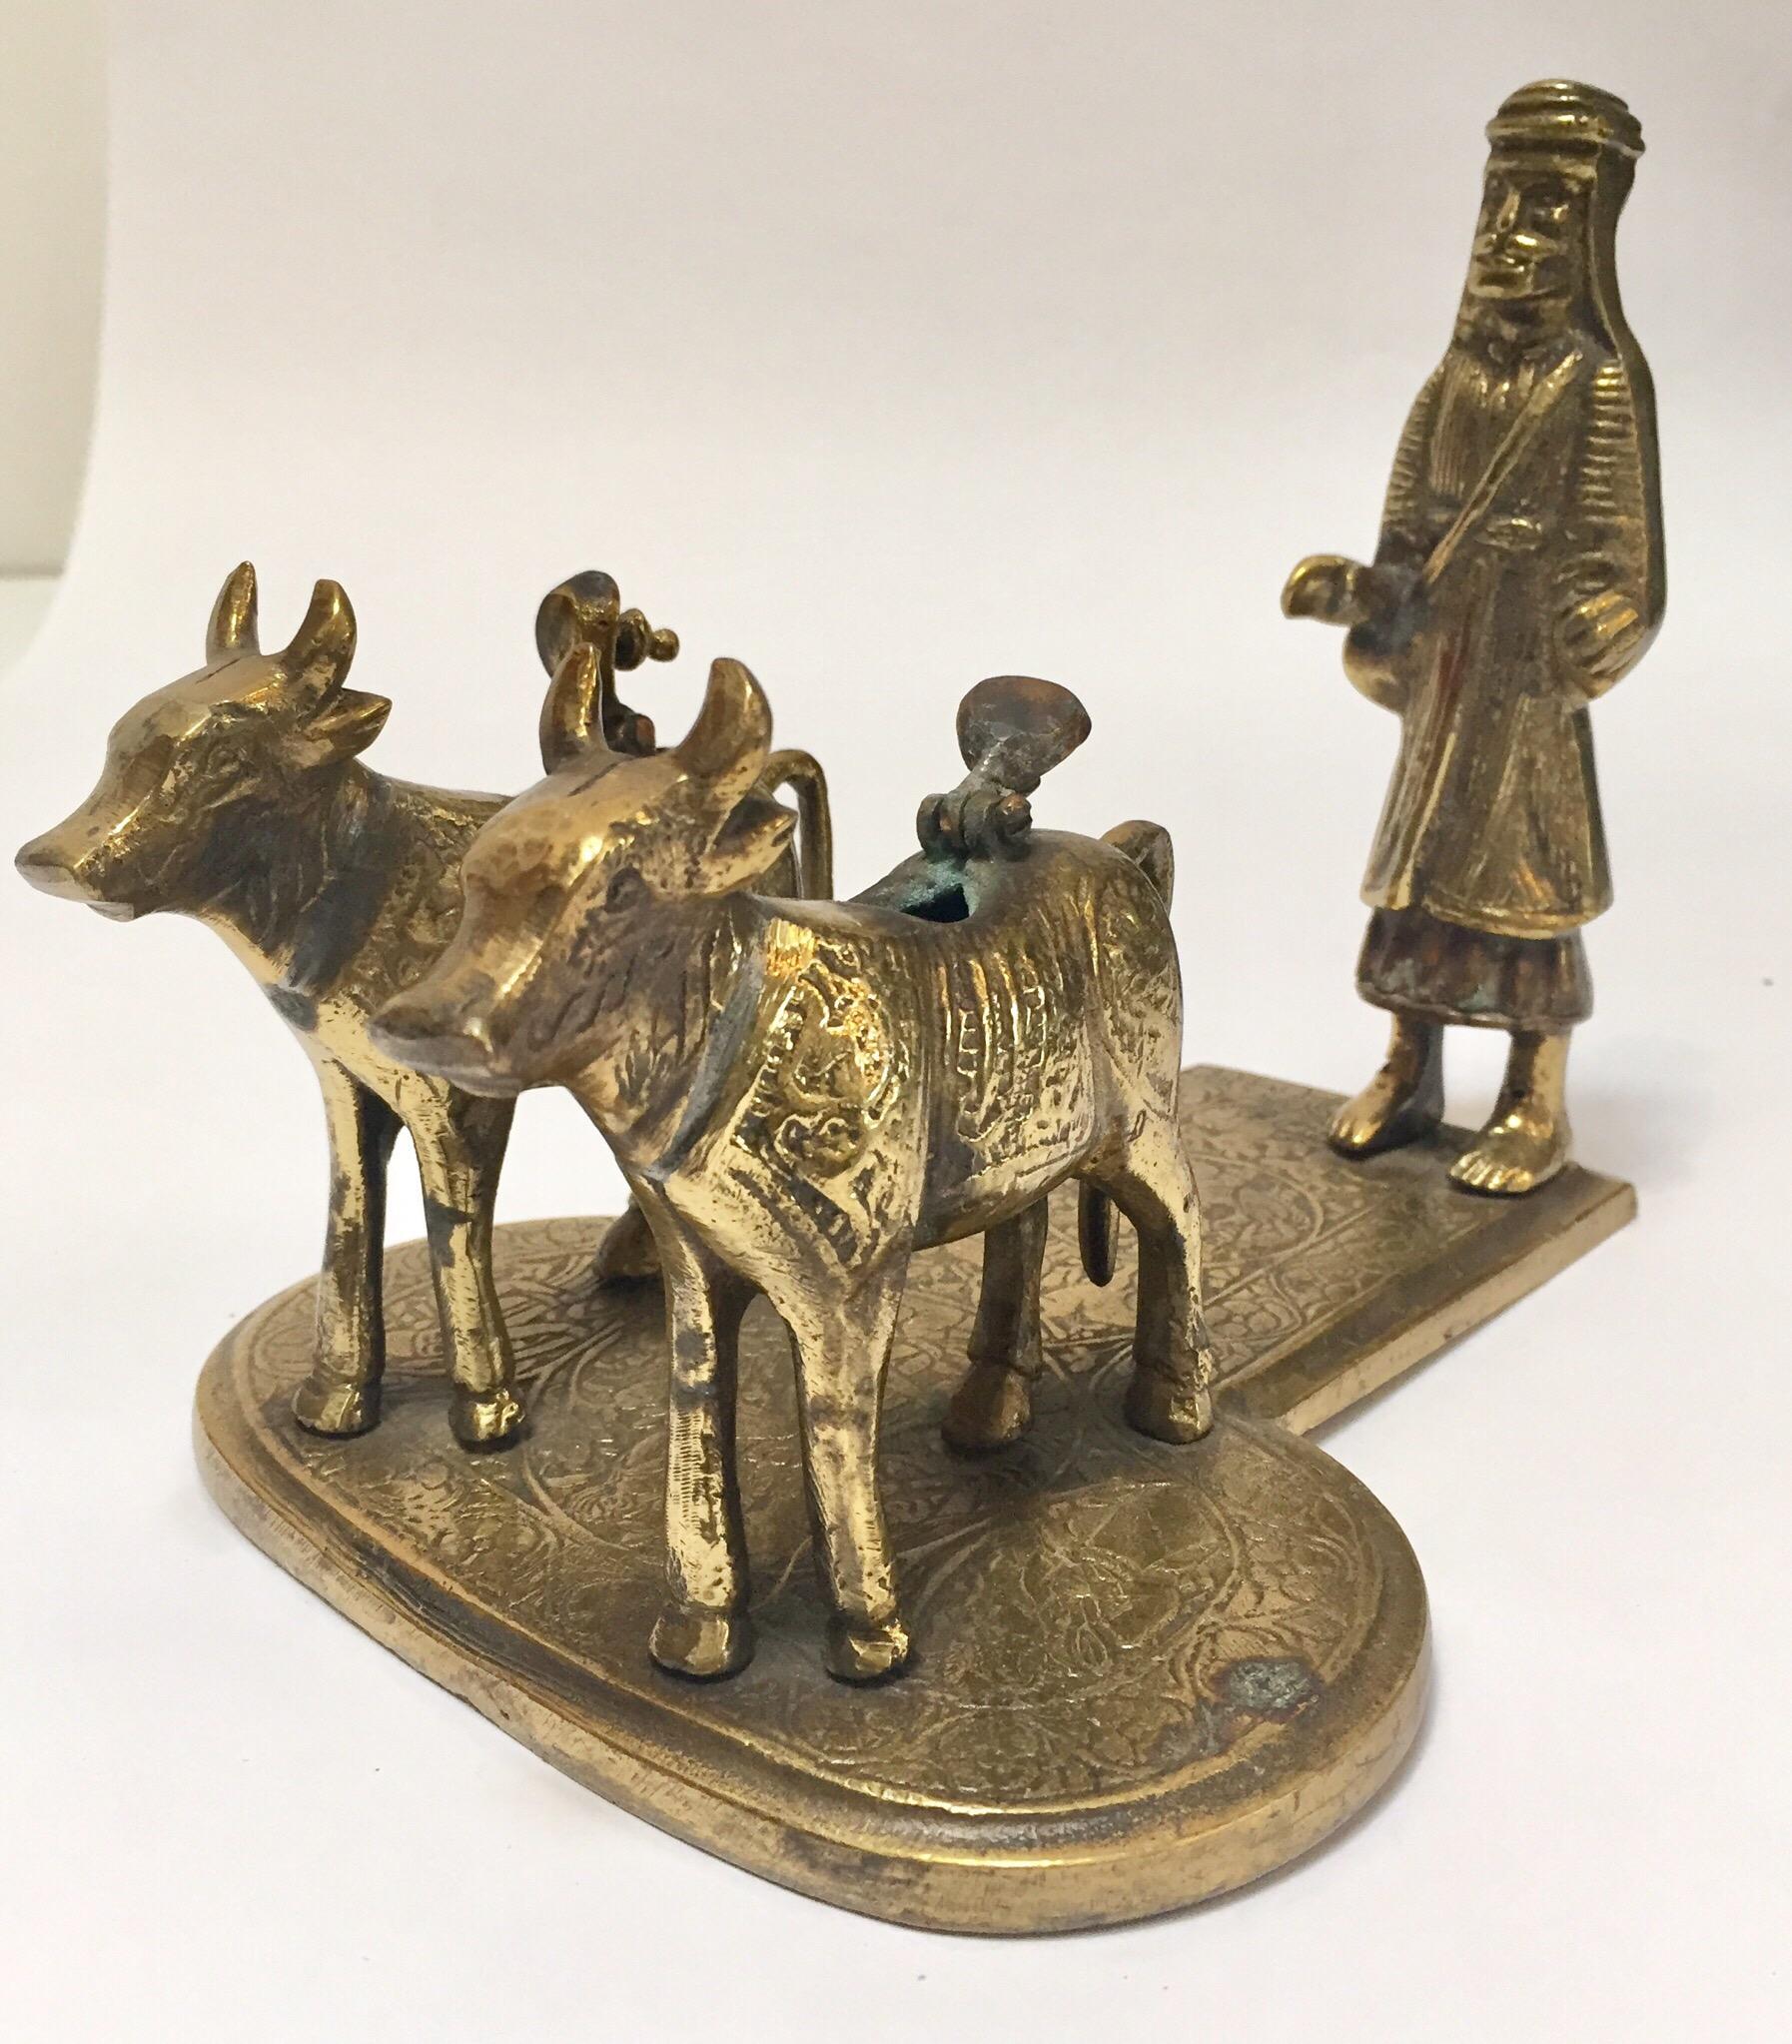 Sculpture en laiton coulé à la main représentant des vaches et un saint homme sur pied.
Les vaches sont considérées comme sacrées en Inde.
Le Seigneur Shiva et Ma Parvati s'asseyaient sur Nandi et voyageaient à travers le monde et l'univers selon